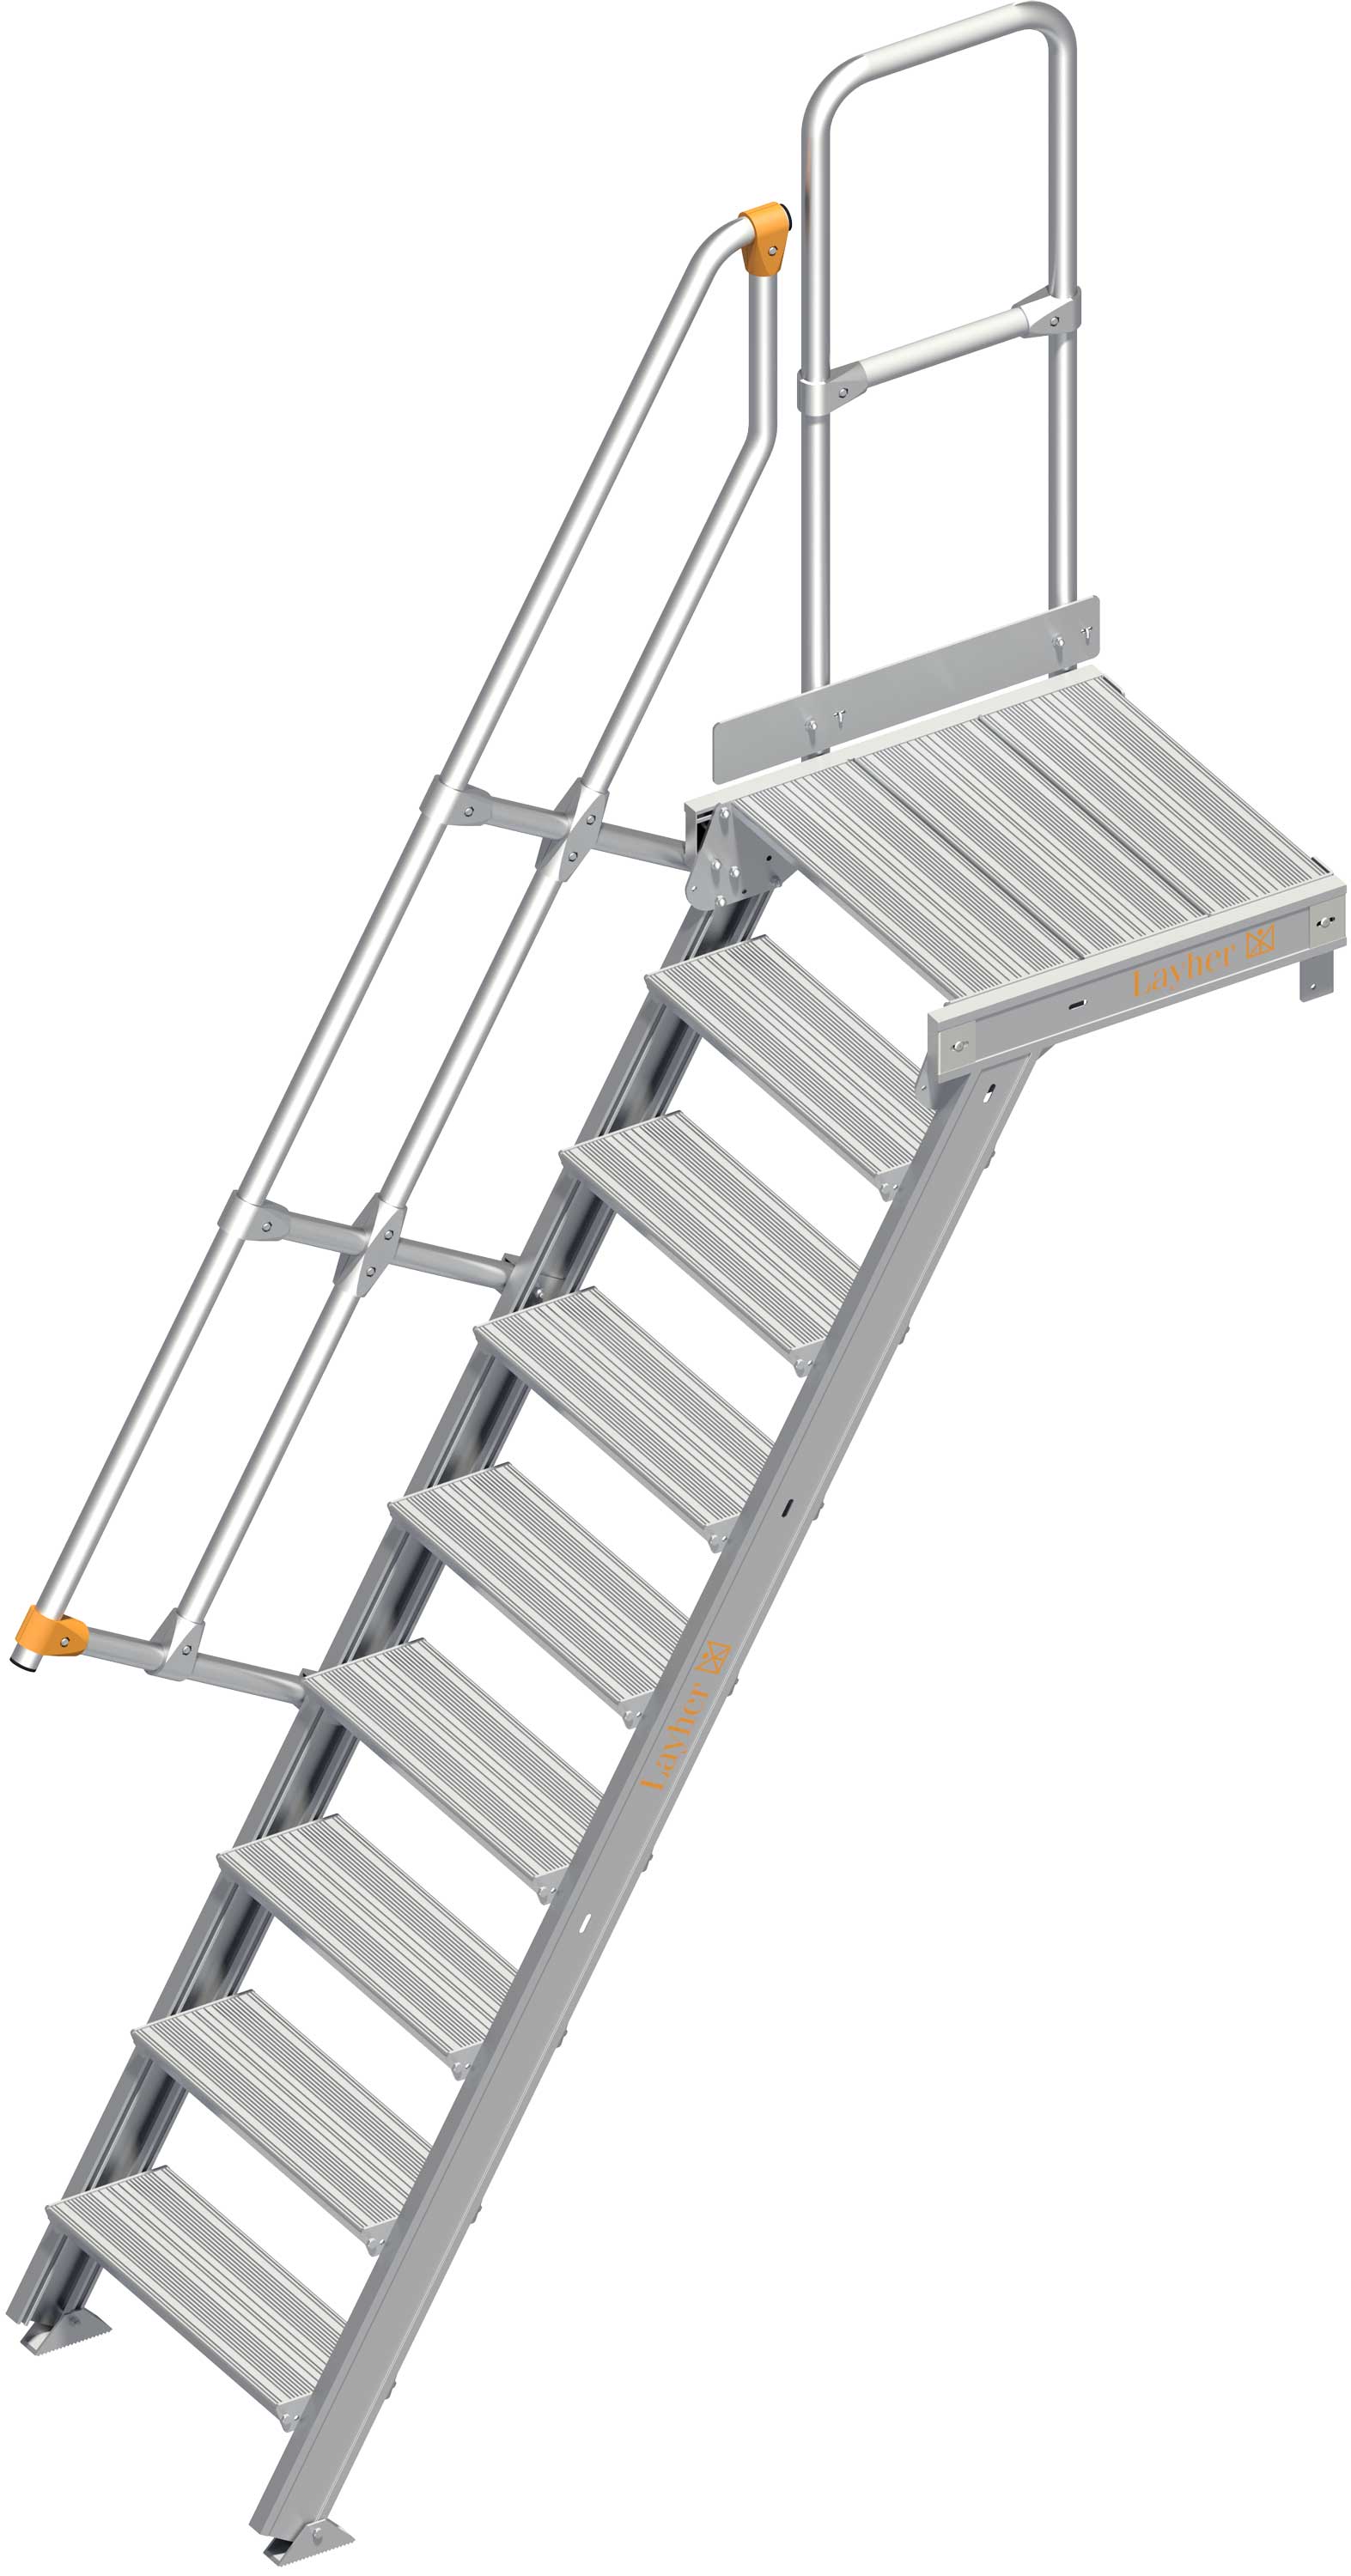 Layher Plattformtreppe 60° SG 9 Stufen - 600 mm breit